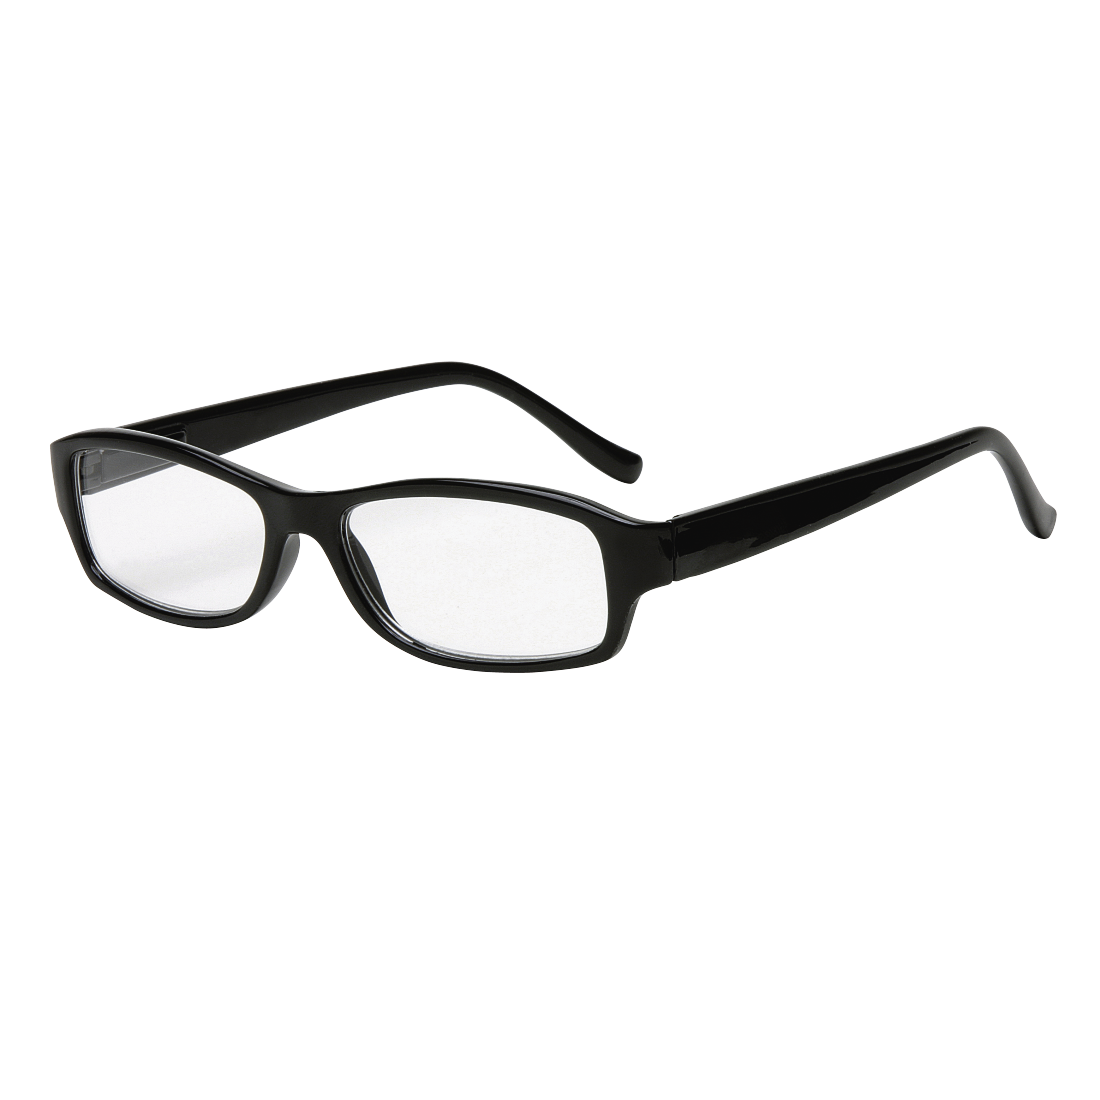 Готовые очки 3. Очки Визини 8051. Готовые корригирующие очки. Очки пластик чёрные. Готовые очки стекло.